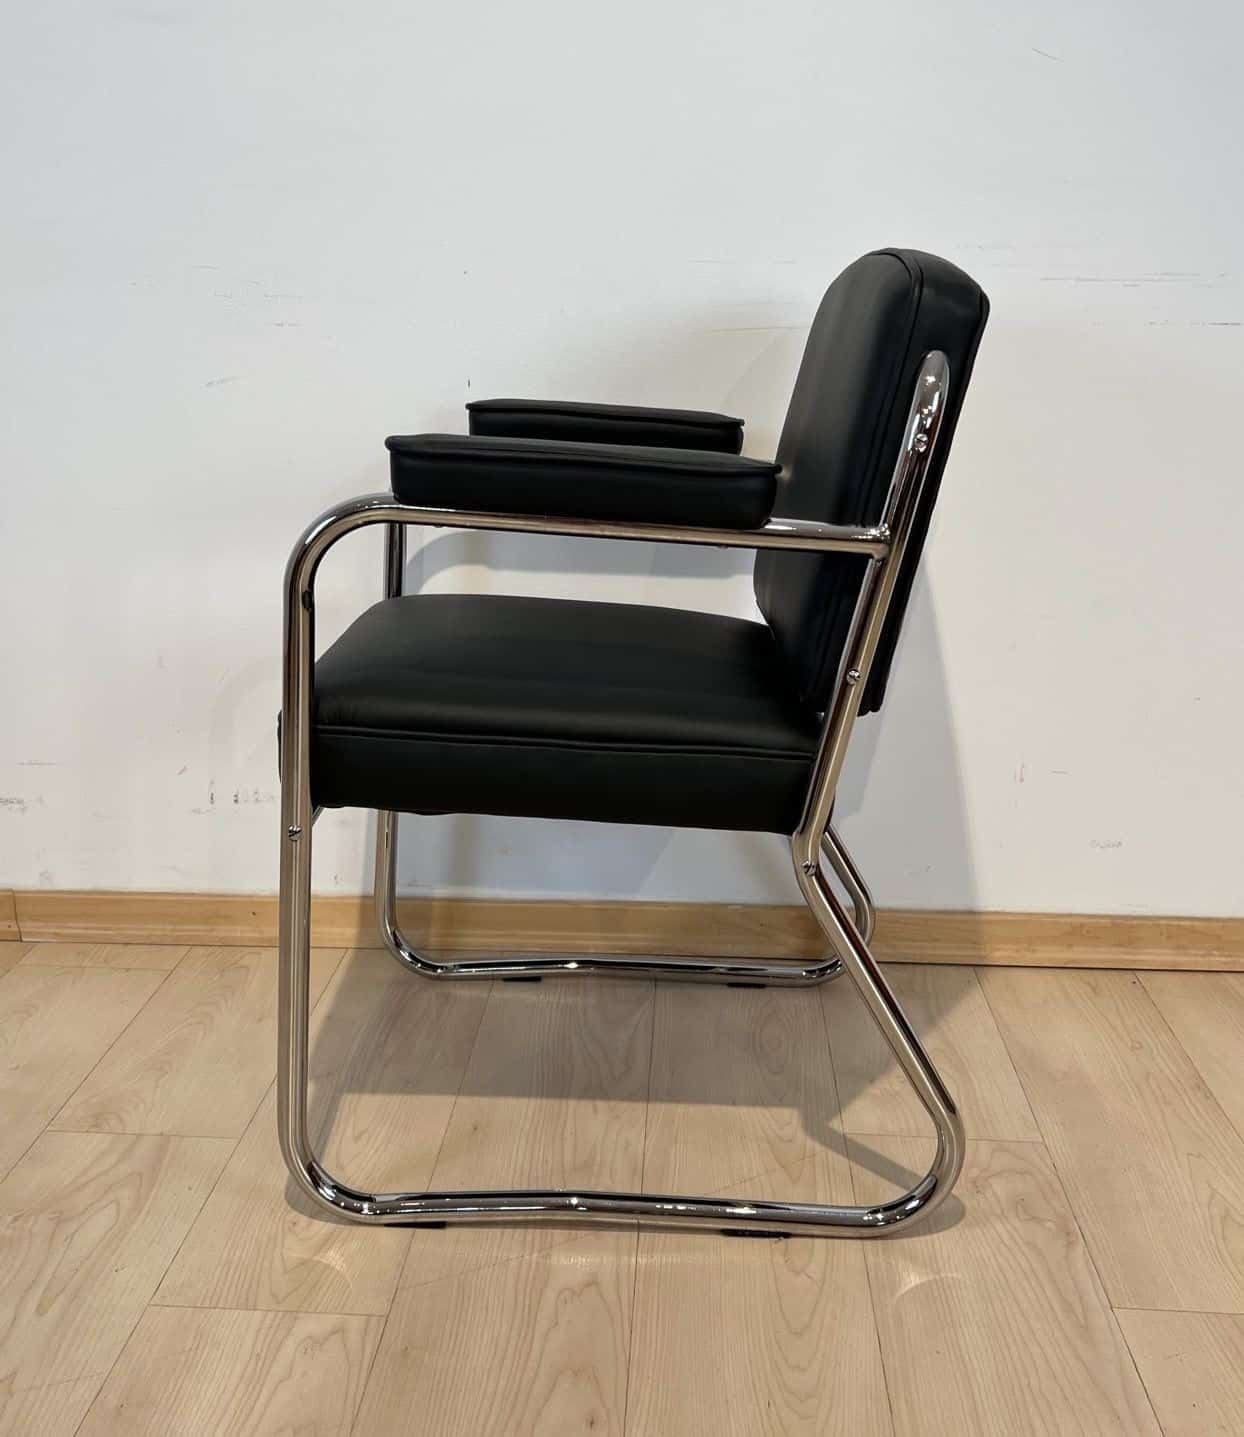 Traditional Vintage Leather Chair & Ottoman, Bauhaus USA